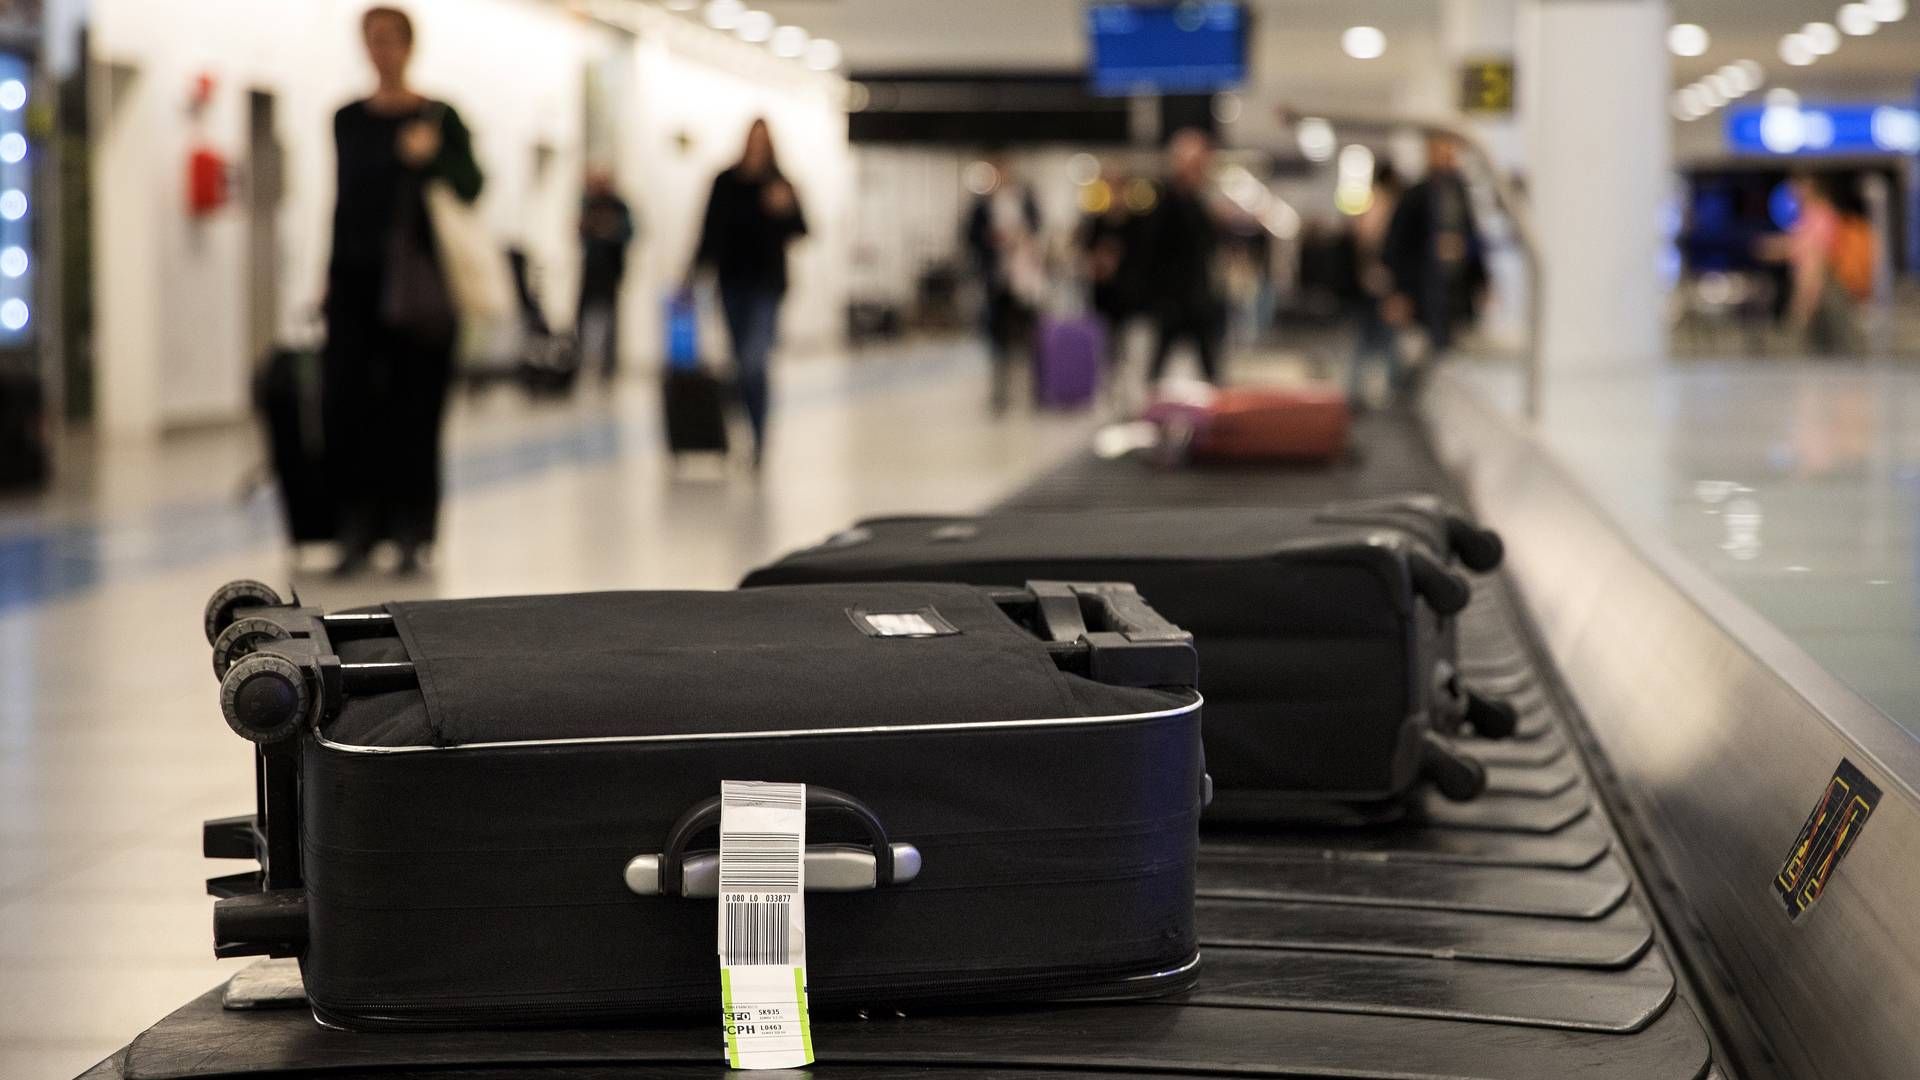 Furnace Skygge cilia Bagageselskab i Københavns Lufthavn er gået konkurs